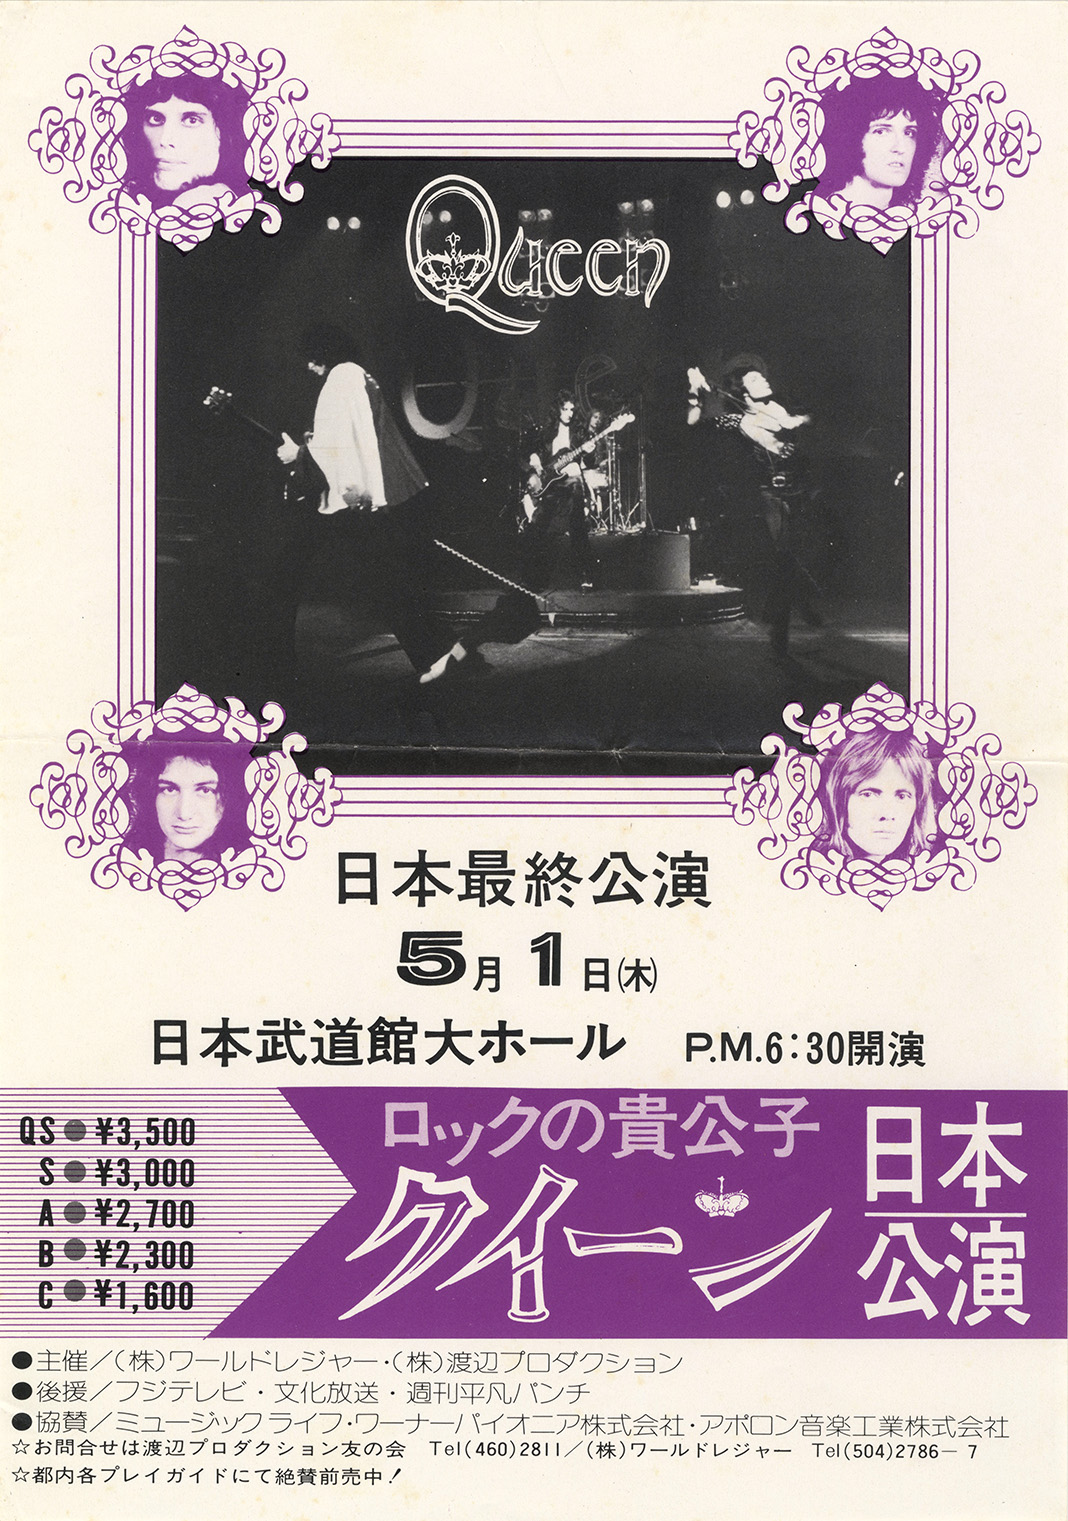 Queen in Tokyo on 1.5.1975